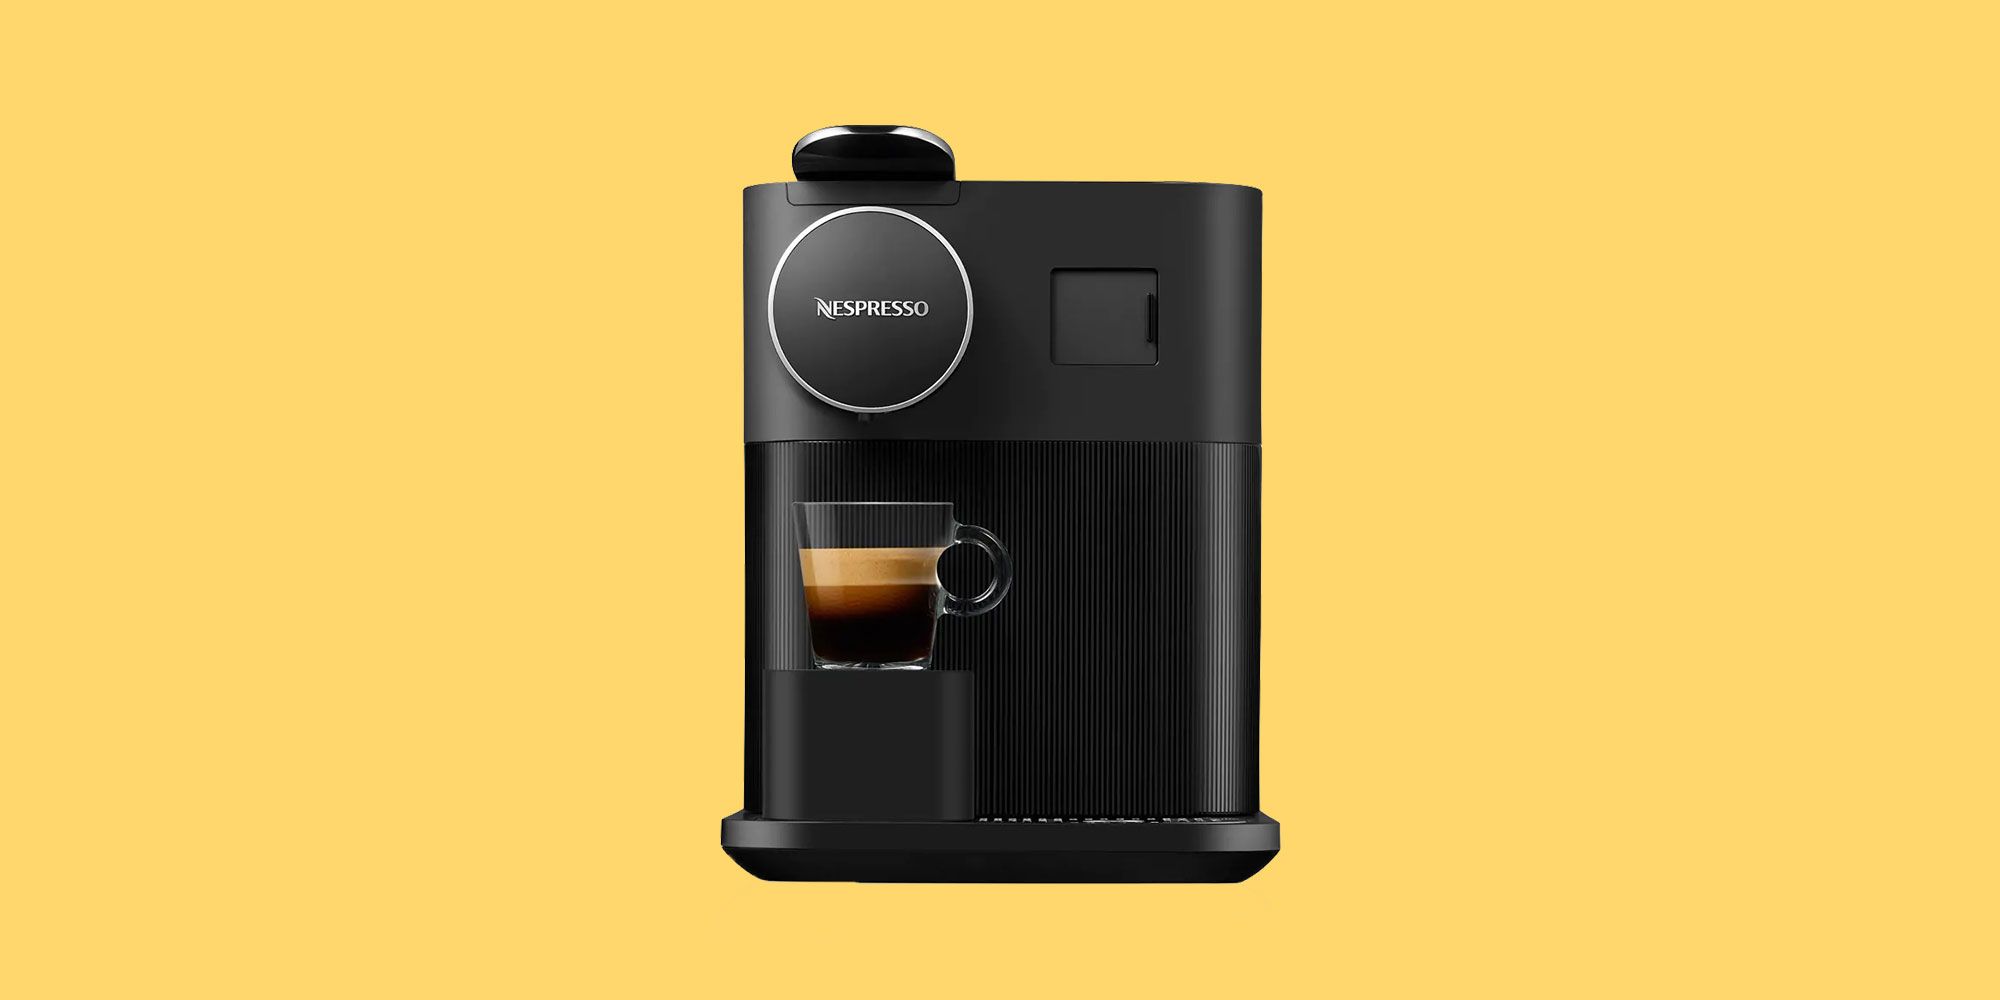 Delonghi Nespresso Gran Lattissima Pod Machine Review